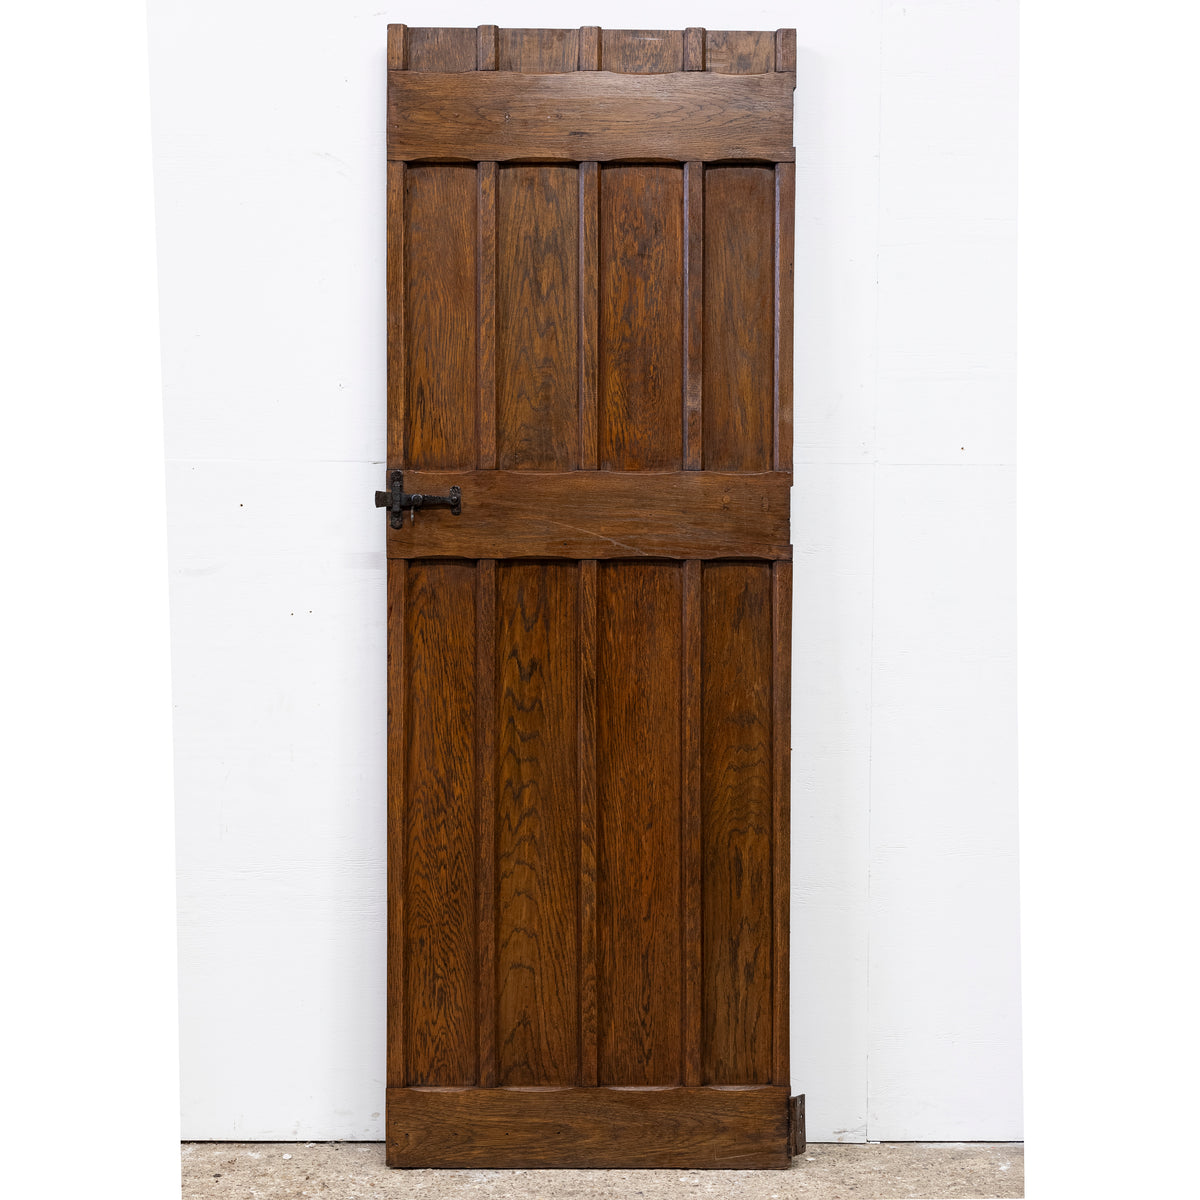 Antique Oak Latch Door - 196.5cm x 70cm | The Architectural Forum